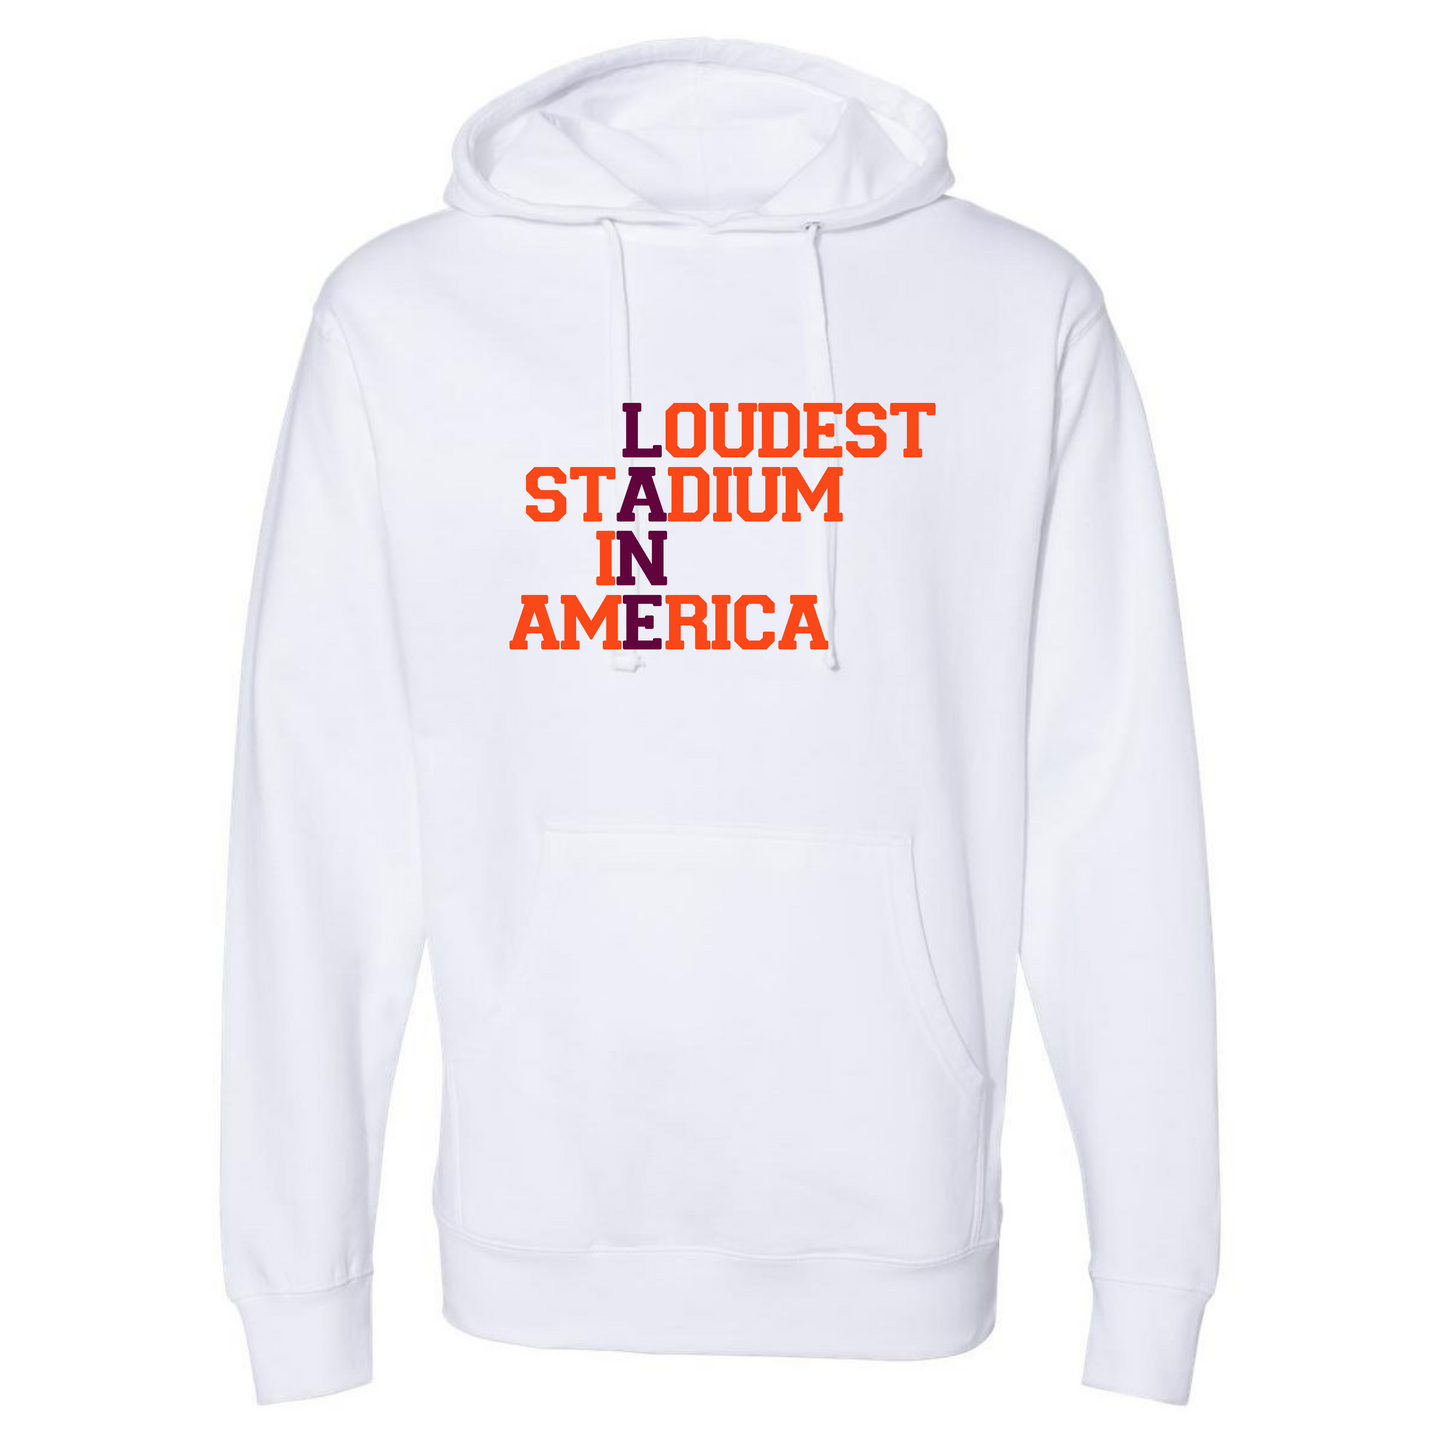 Loudest Stadium in America